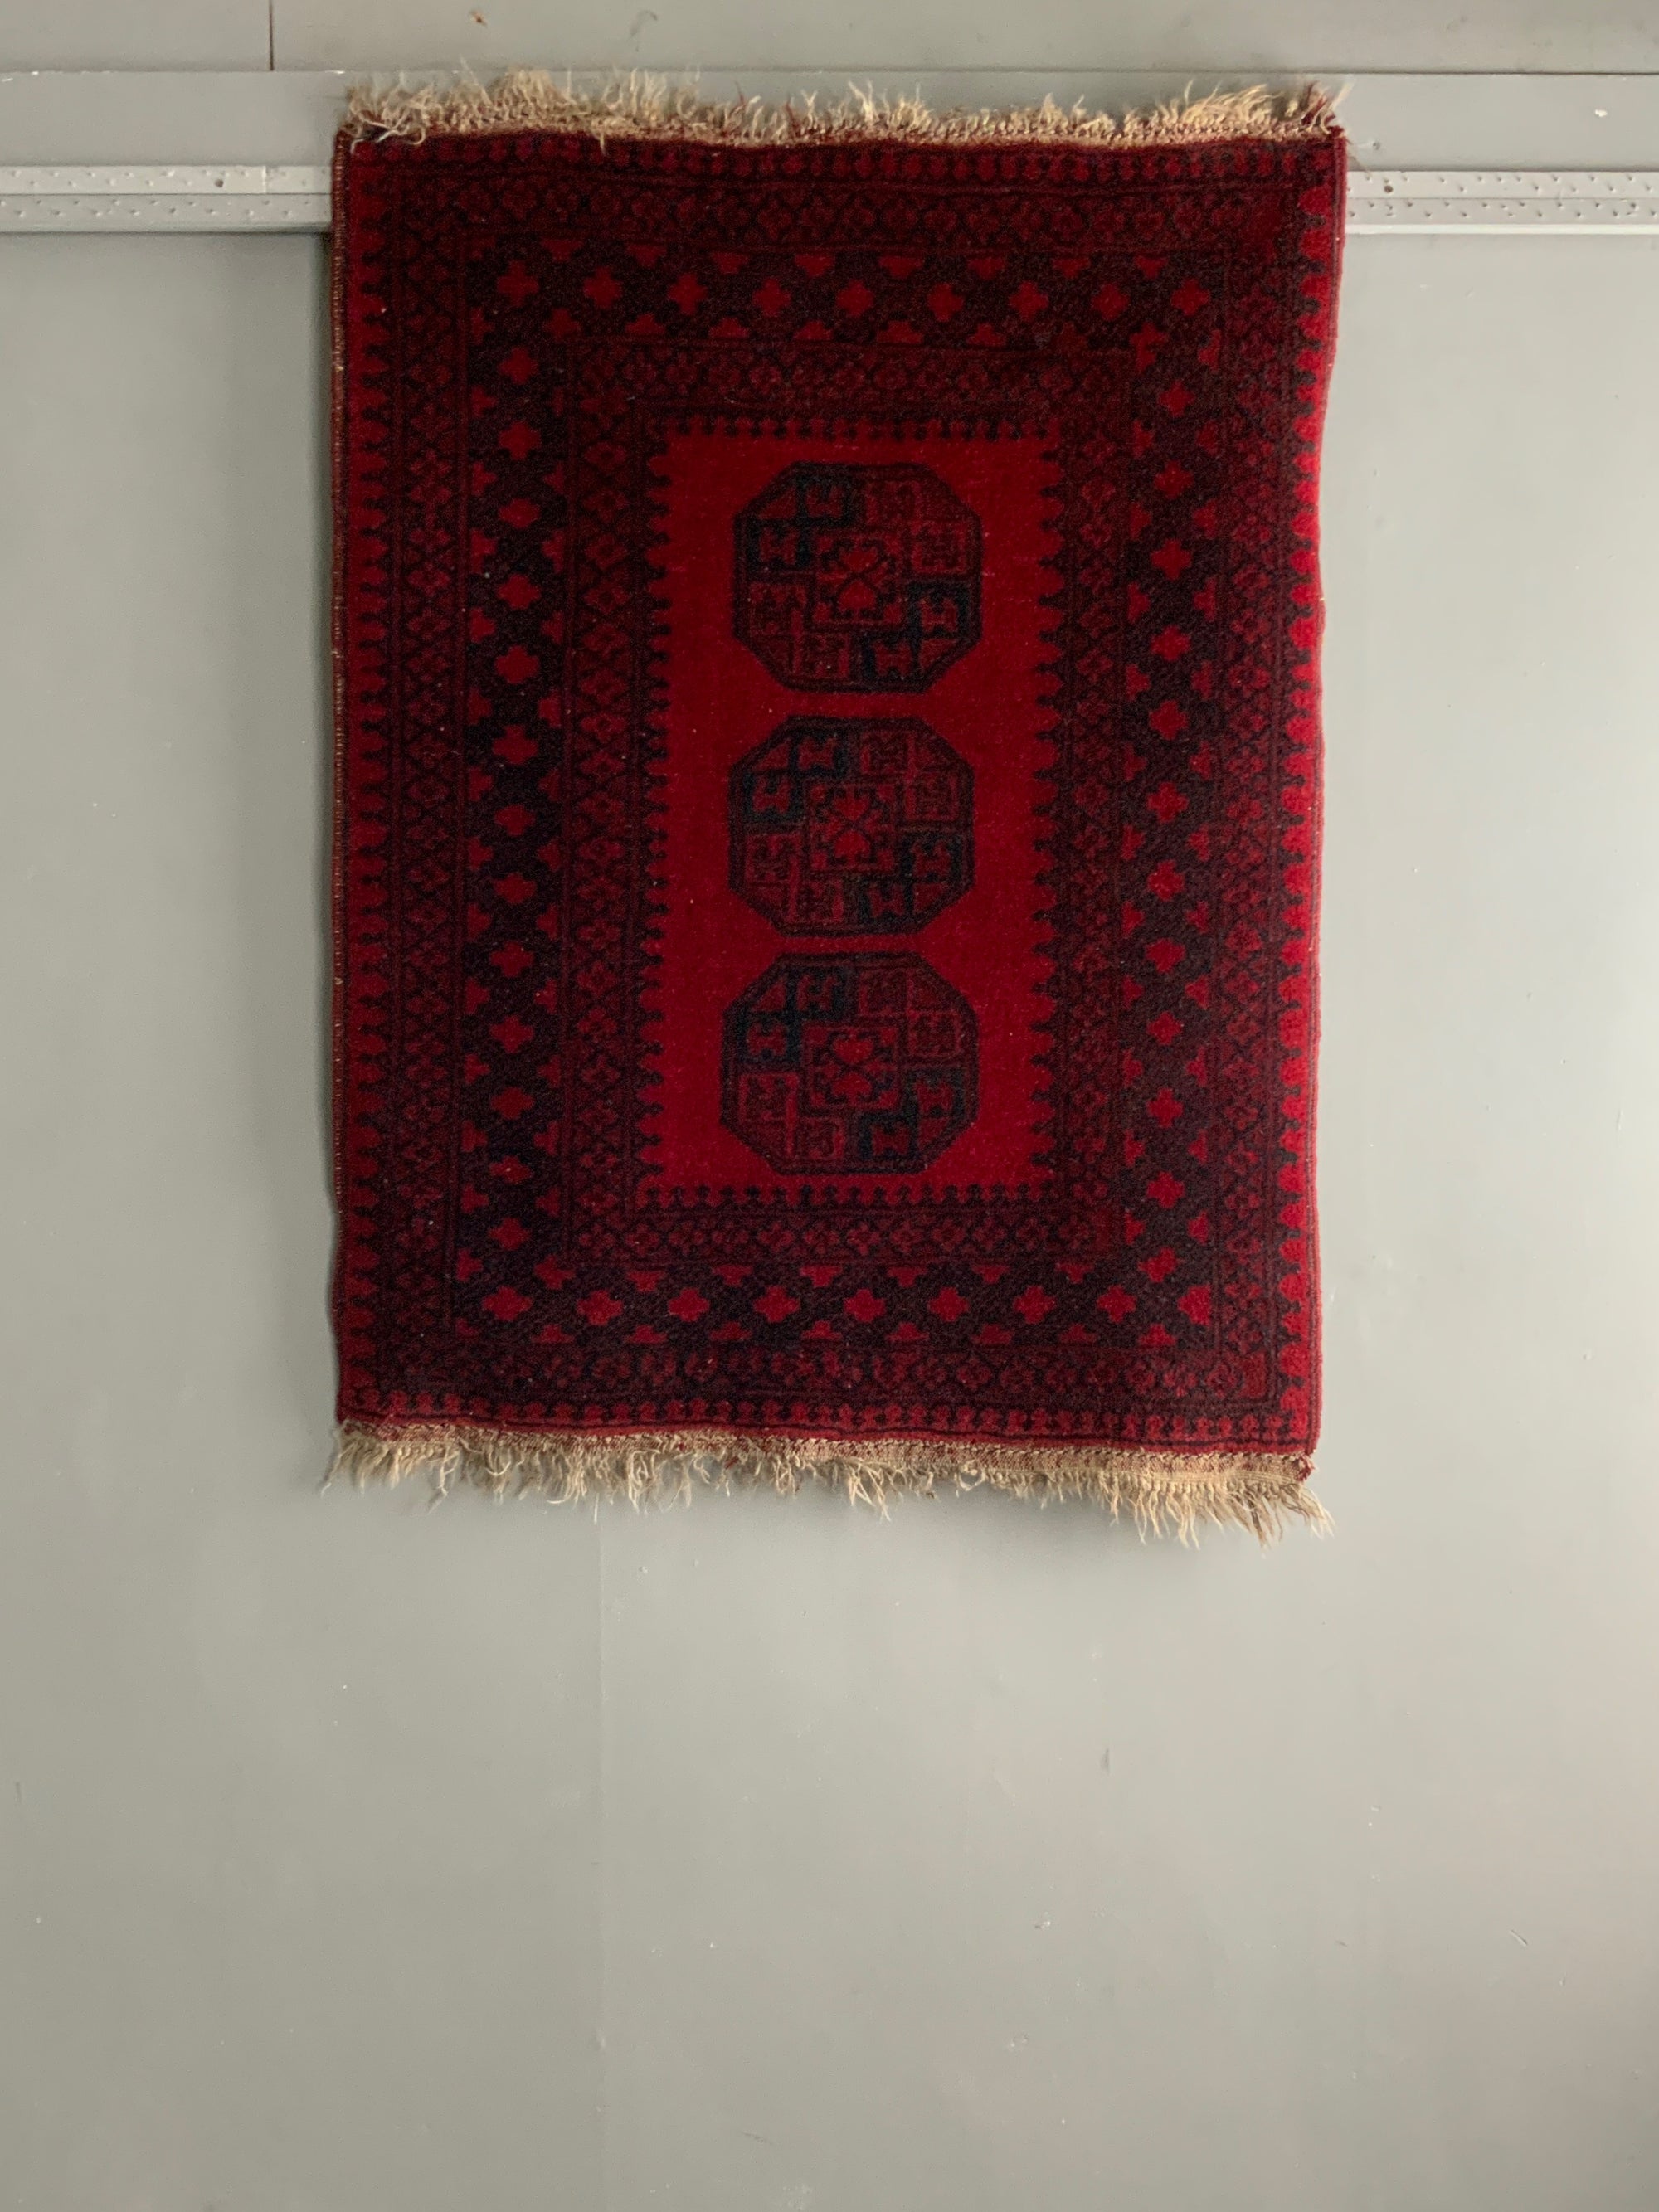 Afghan rug (137 x 103cm)